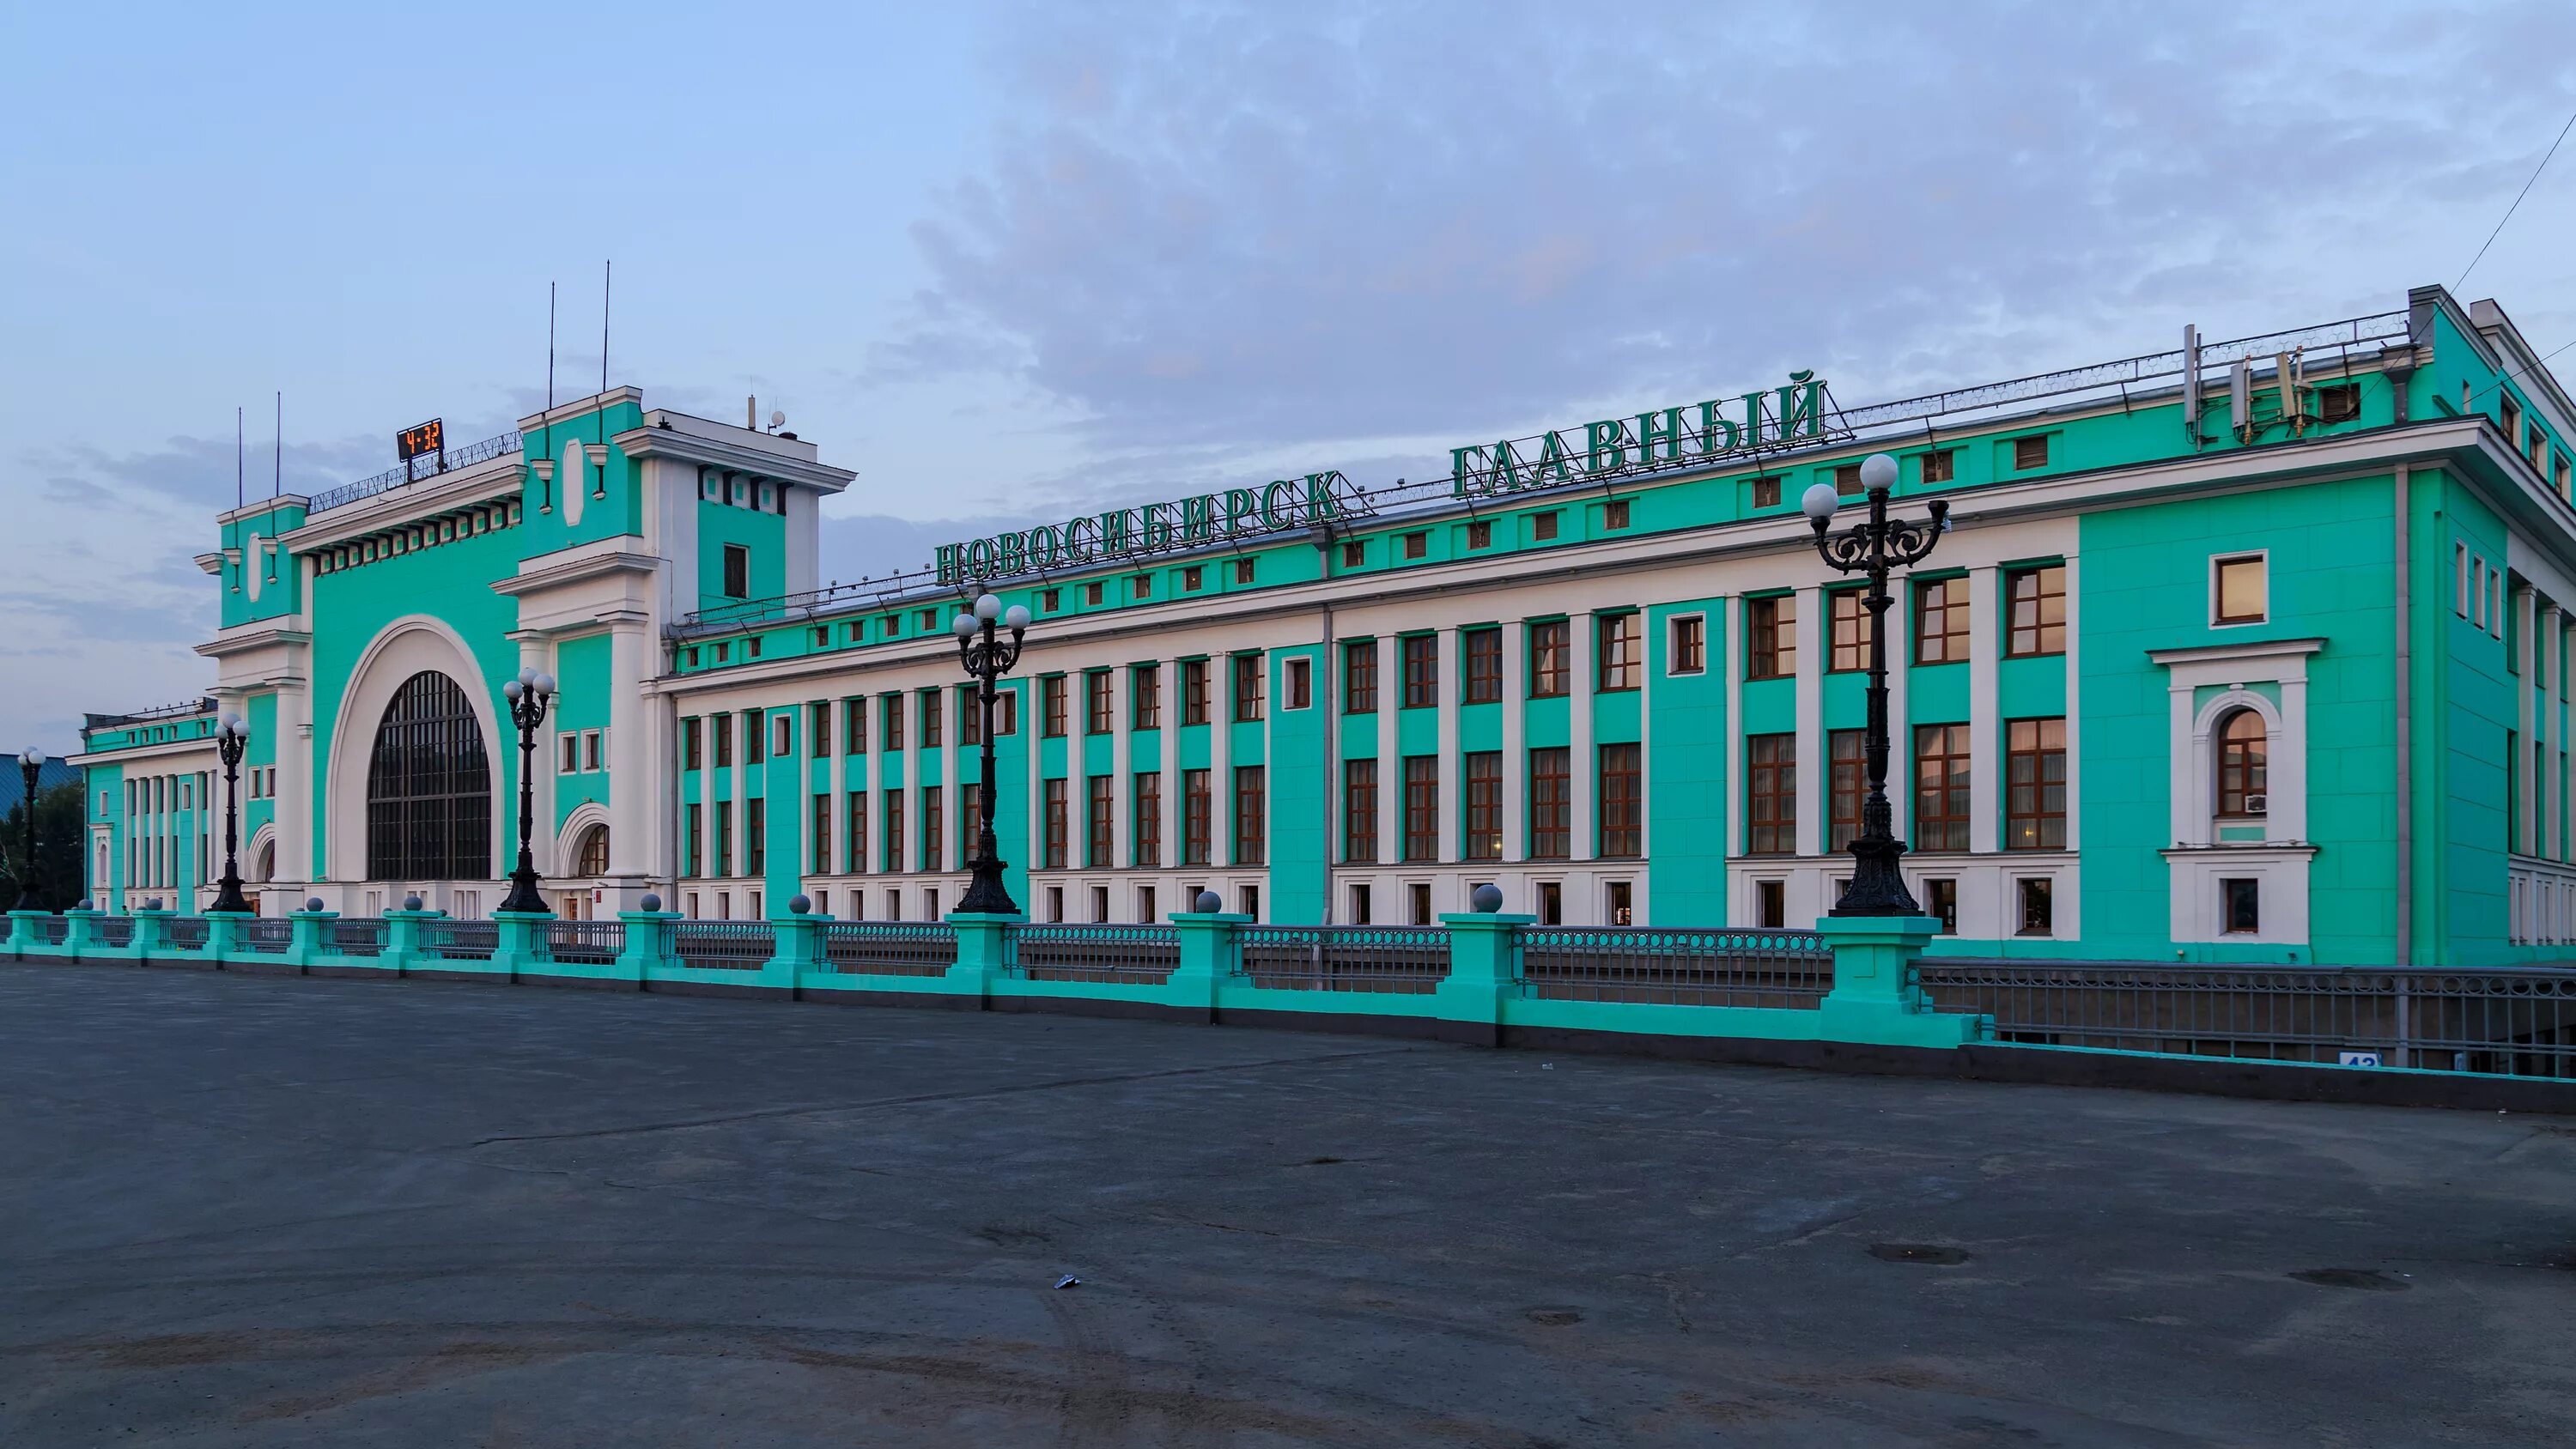 ЖД вокзал Новосибирск главный. Вокзал станции Новосибирск-главный. Новосибирский главный вокзал главный Новосибирск. Железнодорожная станция Новосибирск-главный. Вокзалы новосибирской области